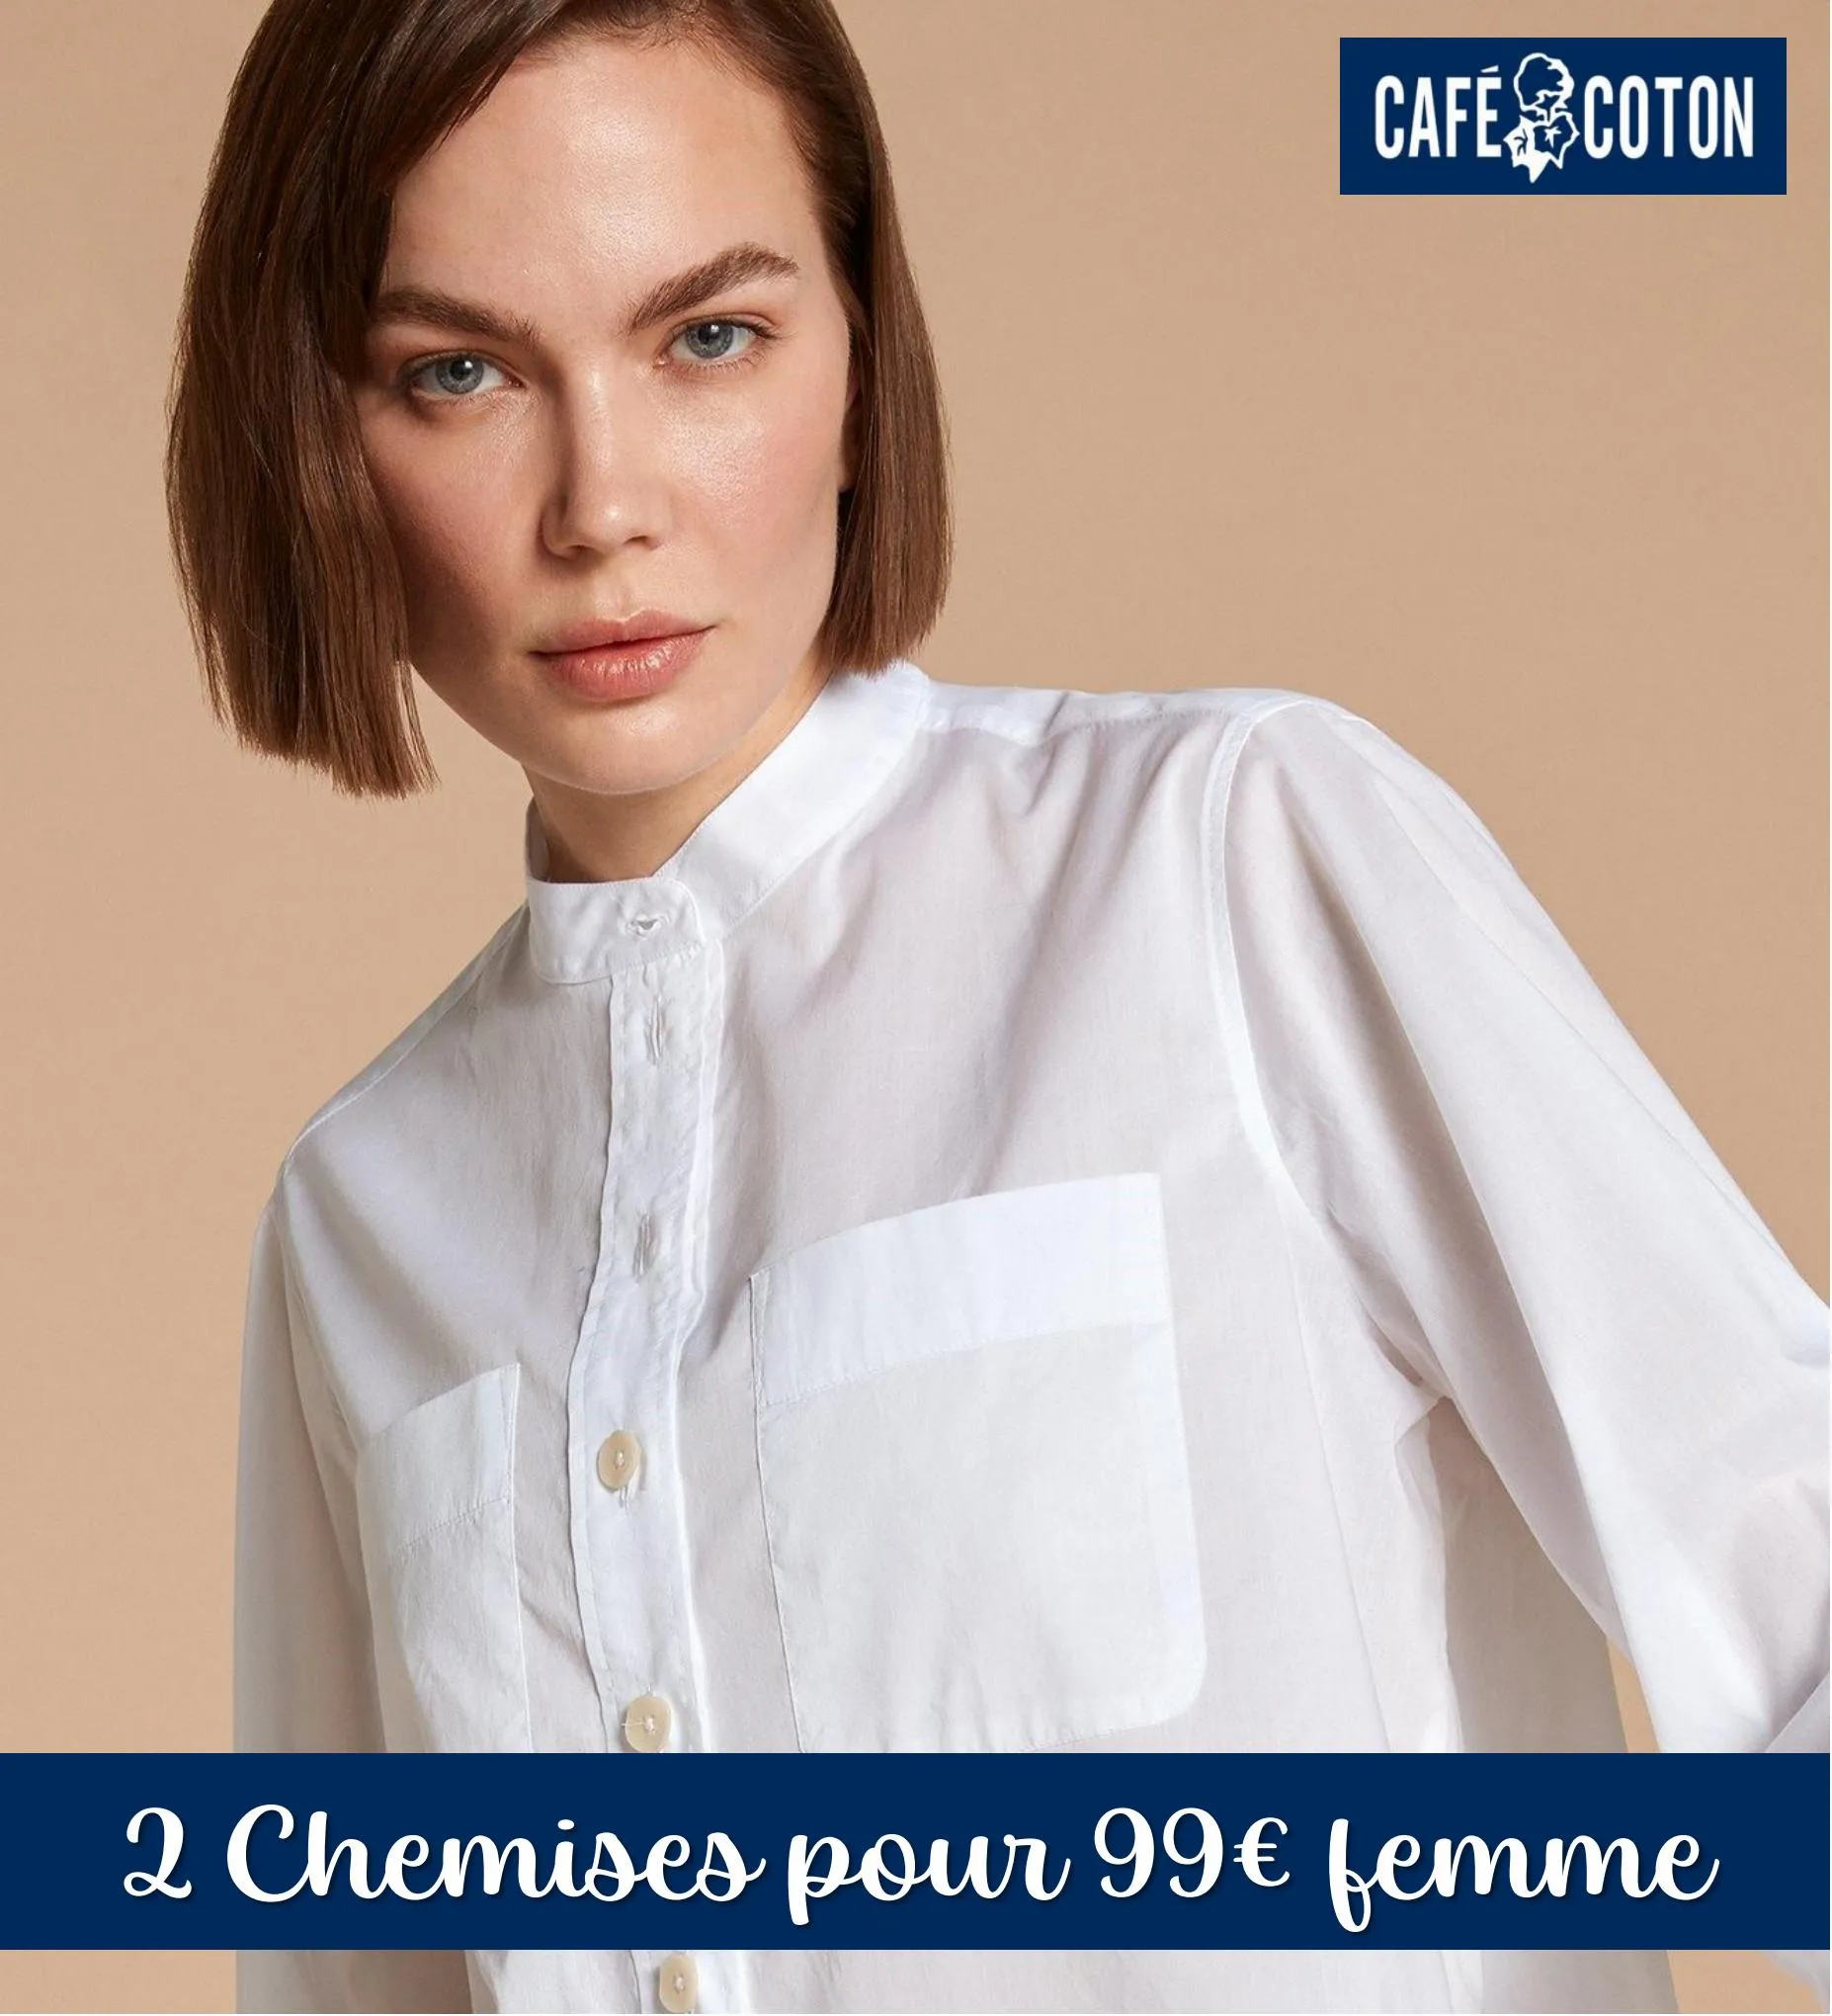 Catalogue 2 Chemises pour 99 femme, page 00001